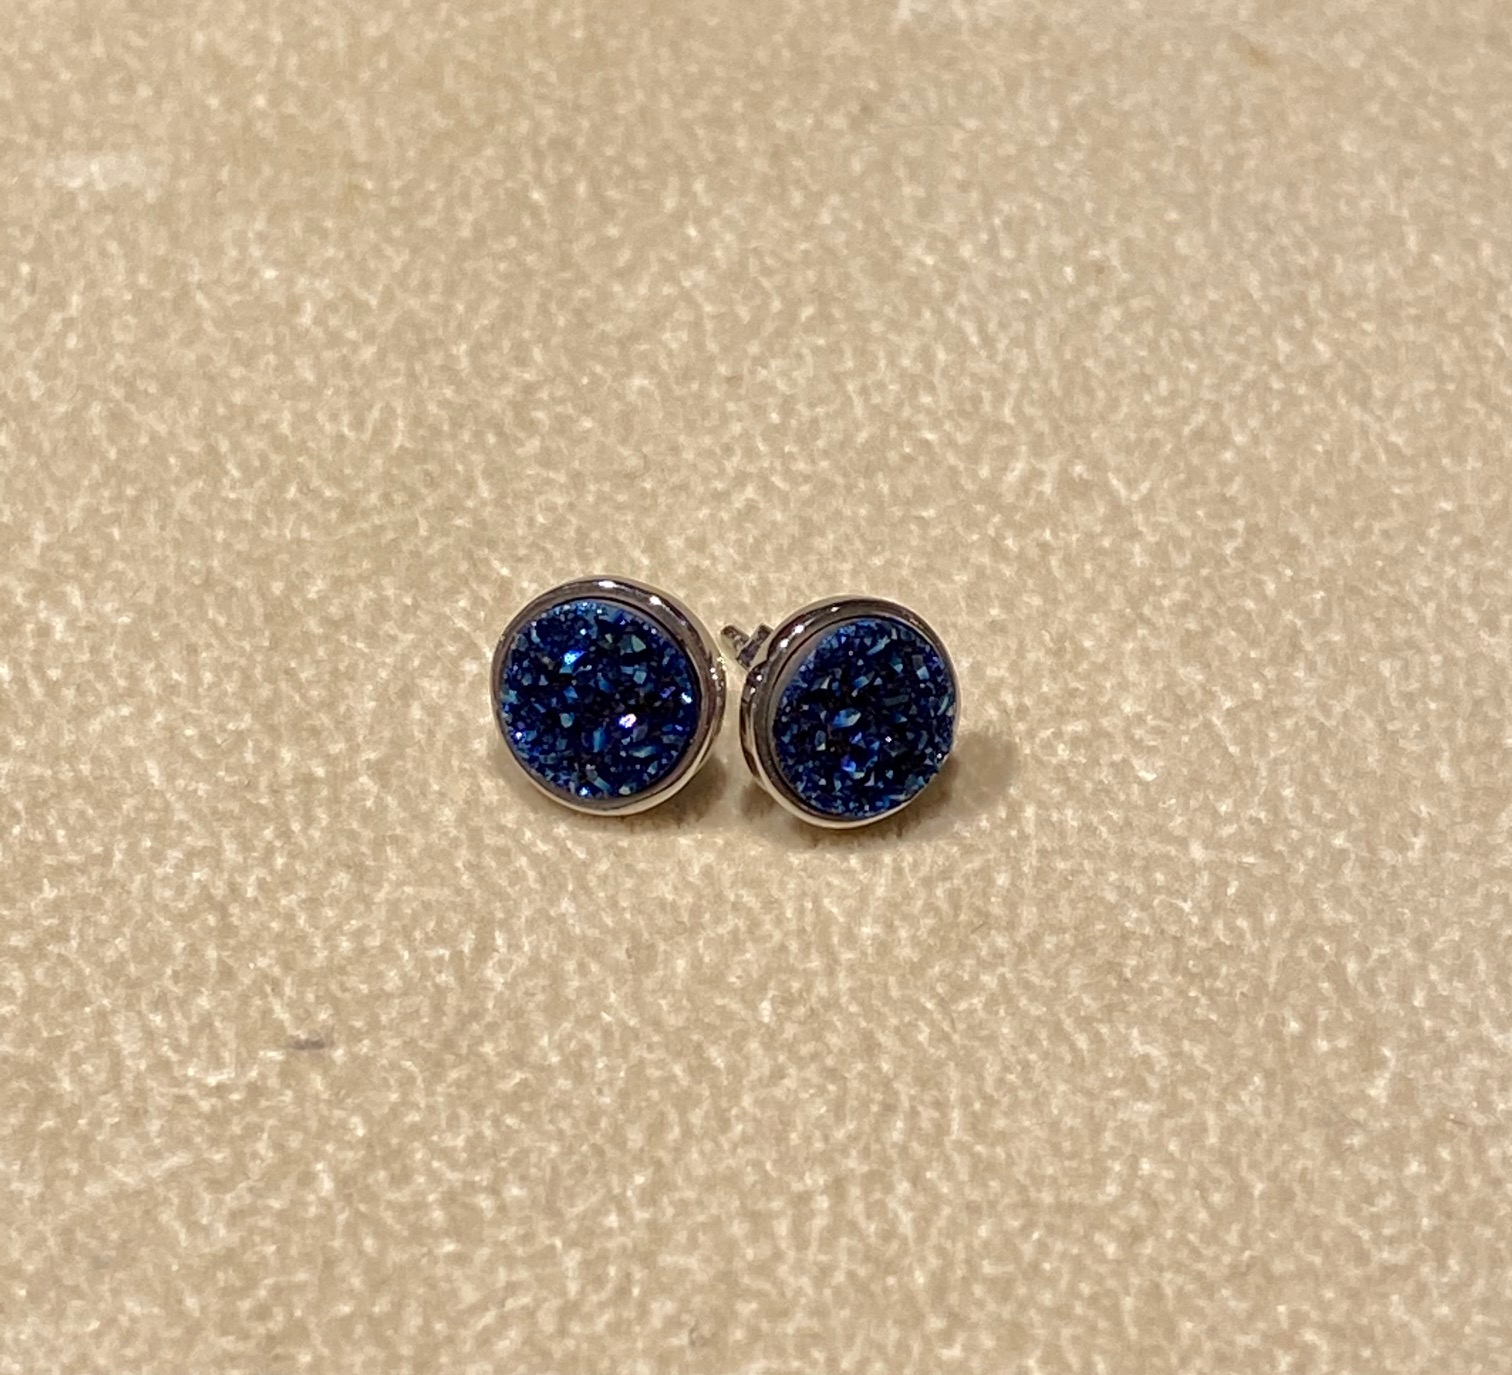 Blue Druzy set in Silver Earrings, 8mm